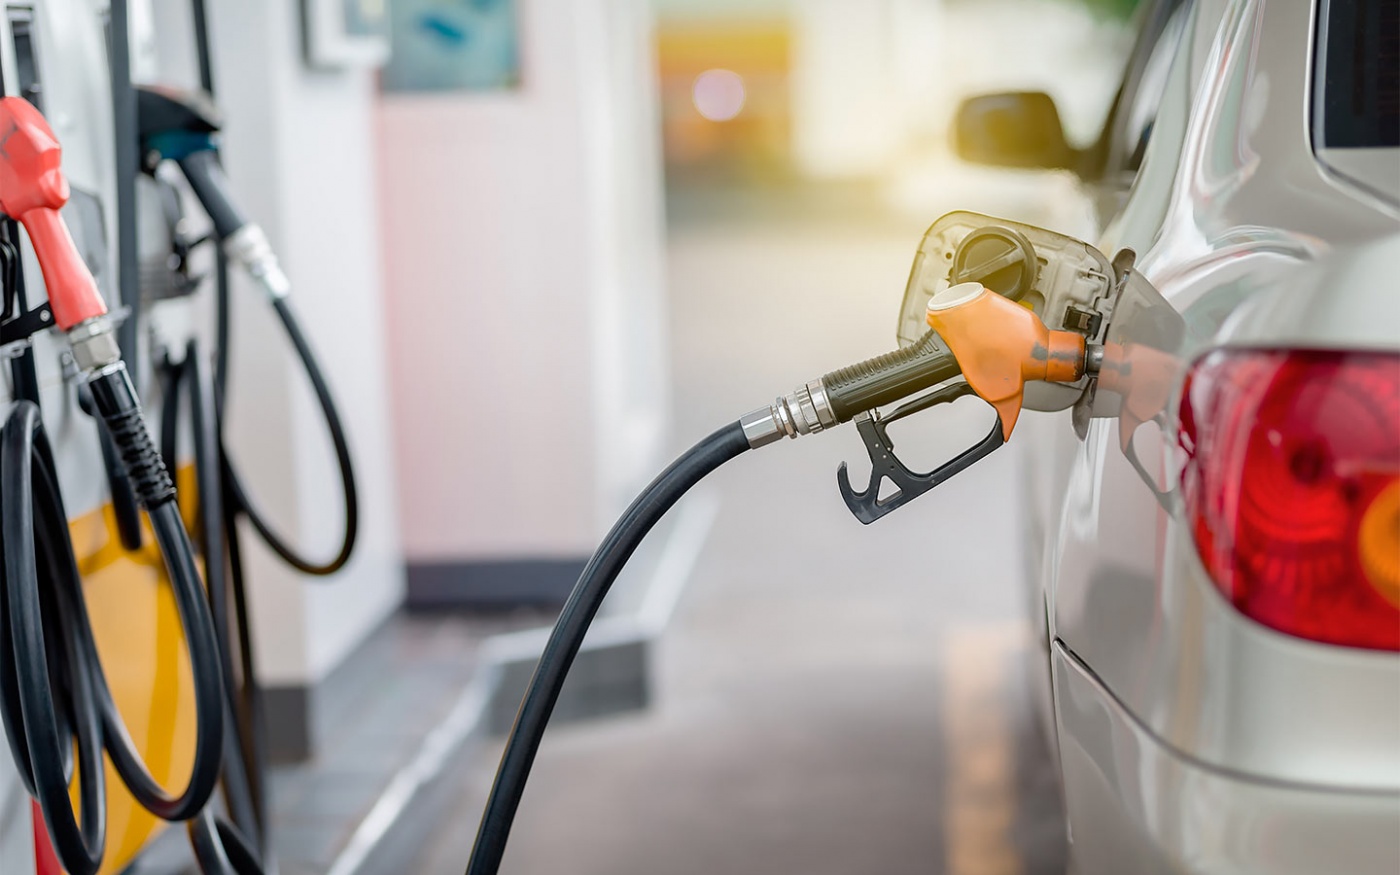 Цены на бензин в рознице: что происходит на АЗС